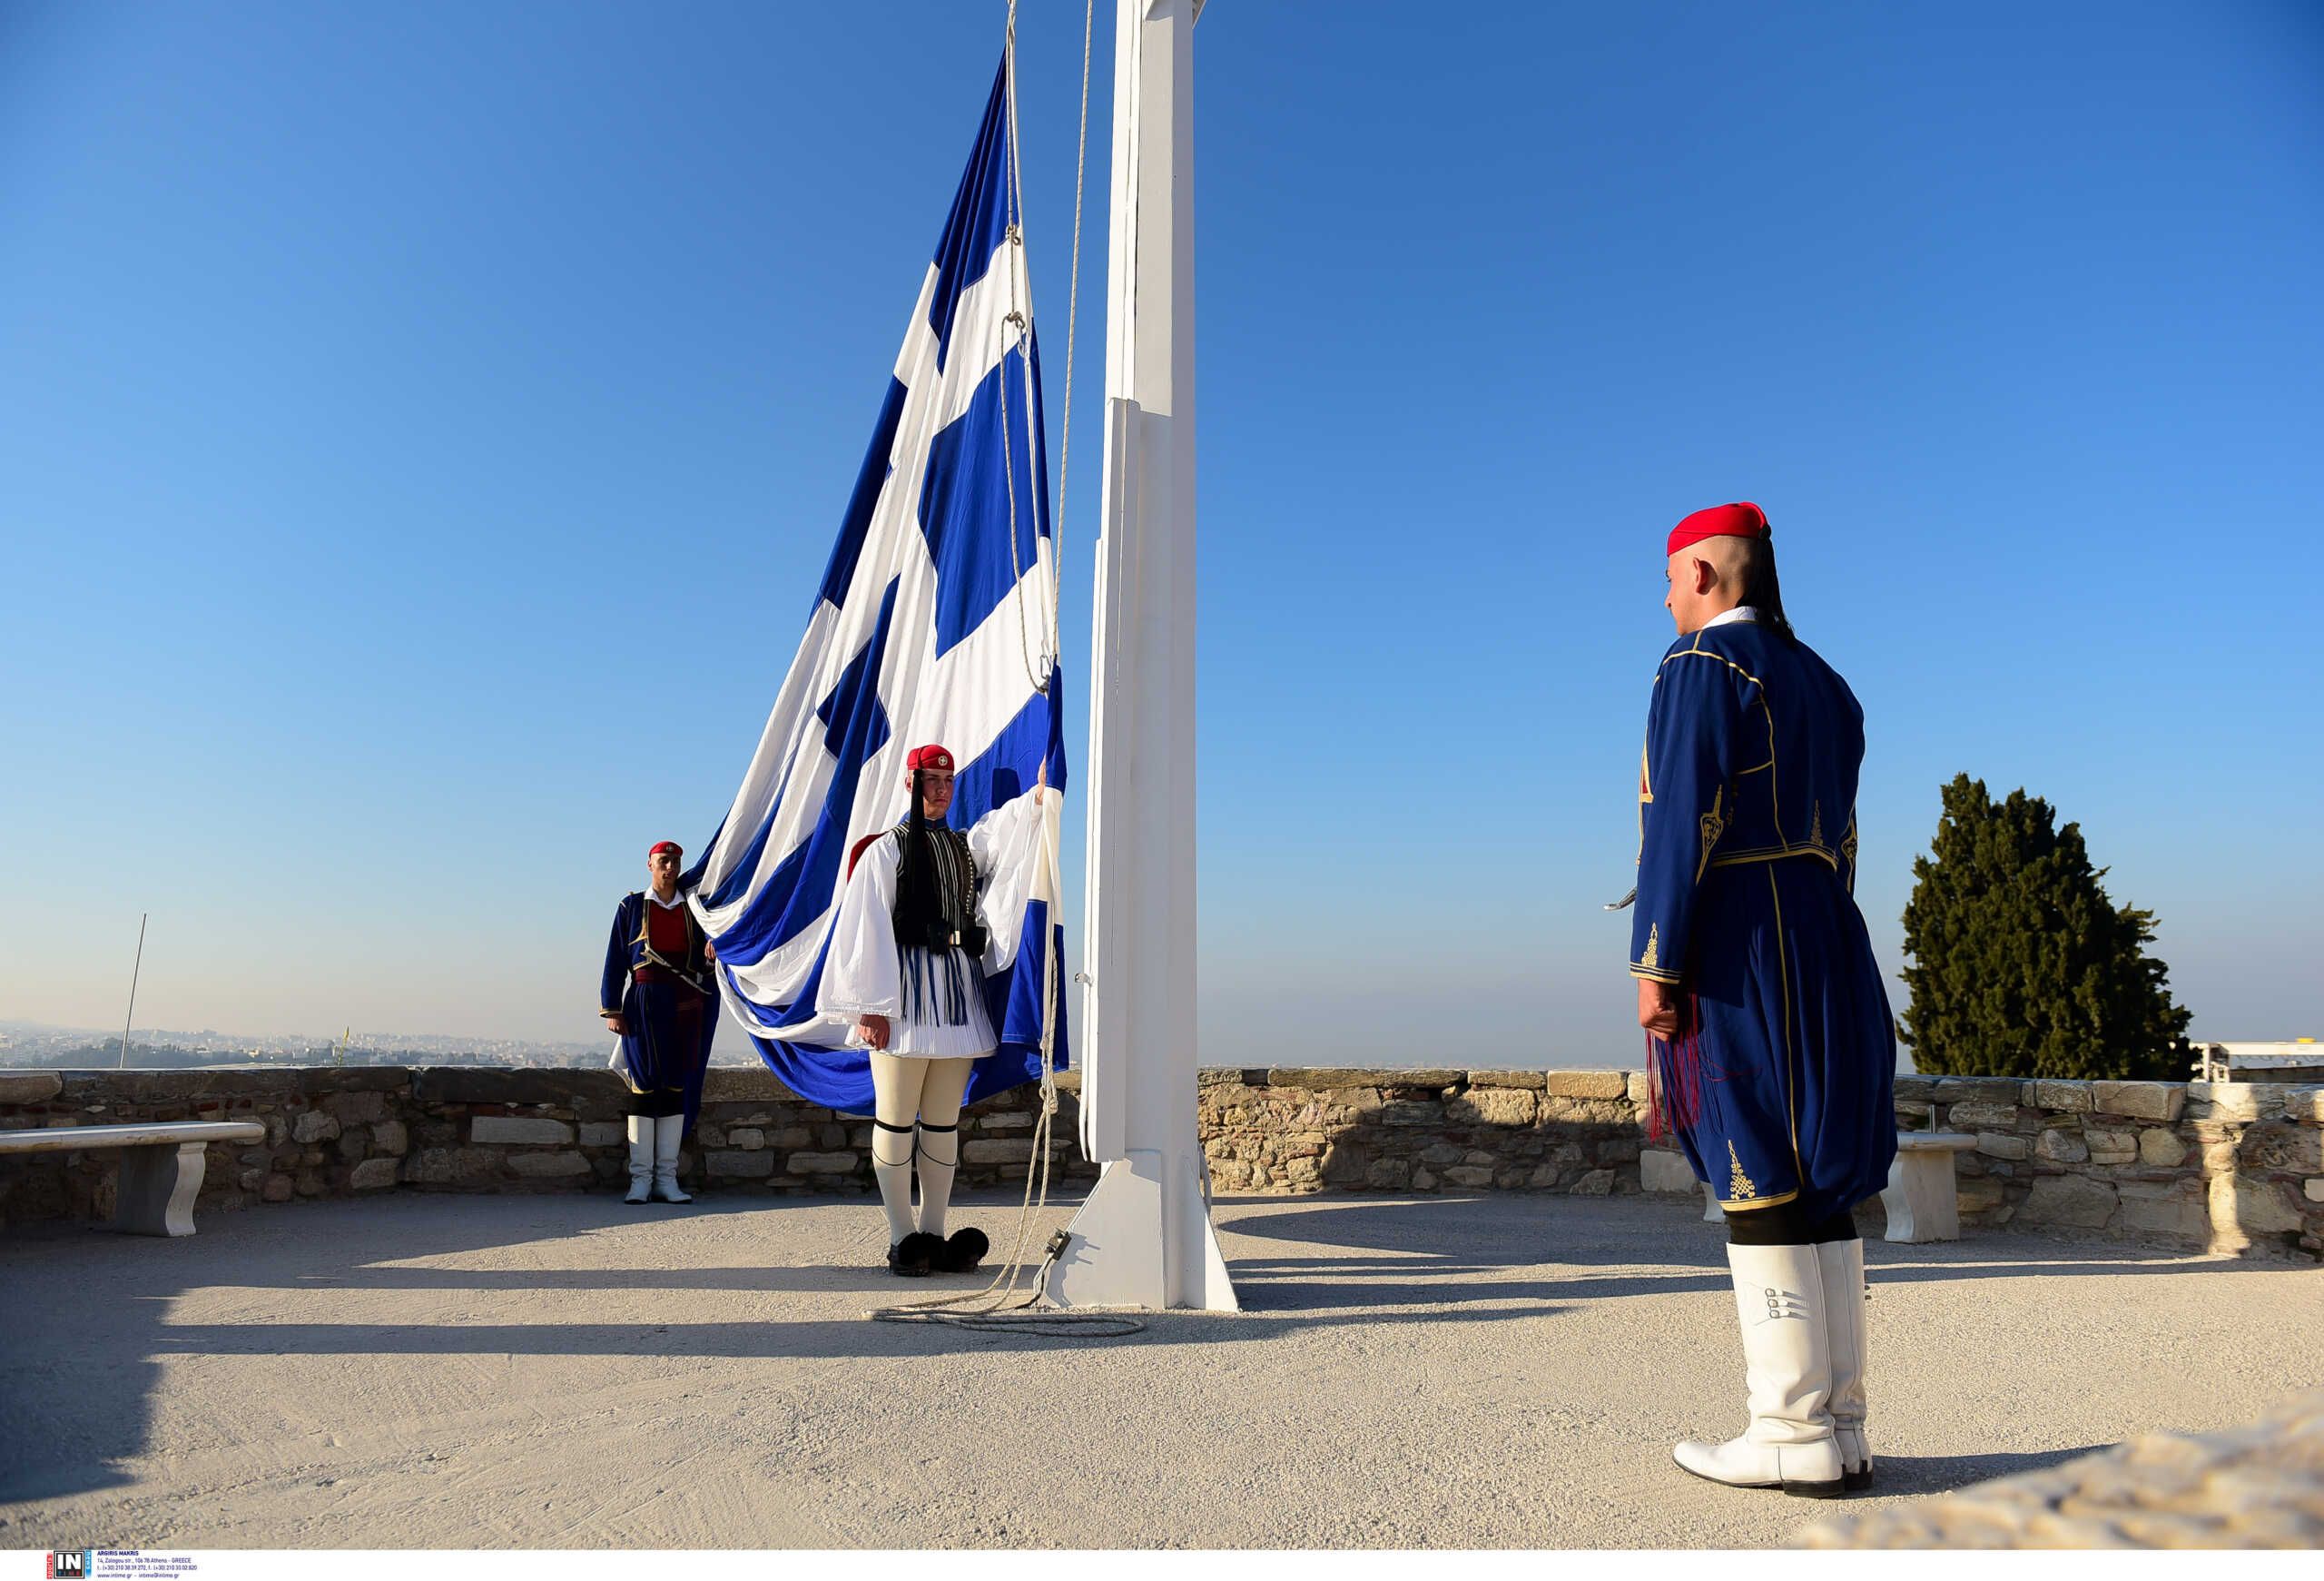 25η Μαρτίου: Η εντυπωσιακή έπαρση της σημαίας στην Ακρόπολη και οι κανονιοβολισμοί από τον Λυκαβηττό